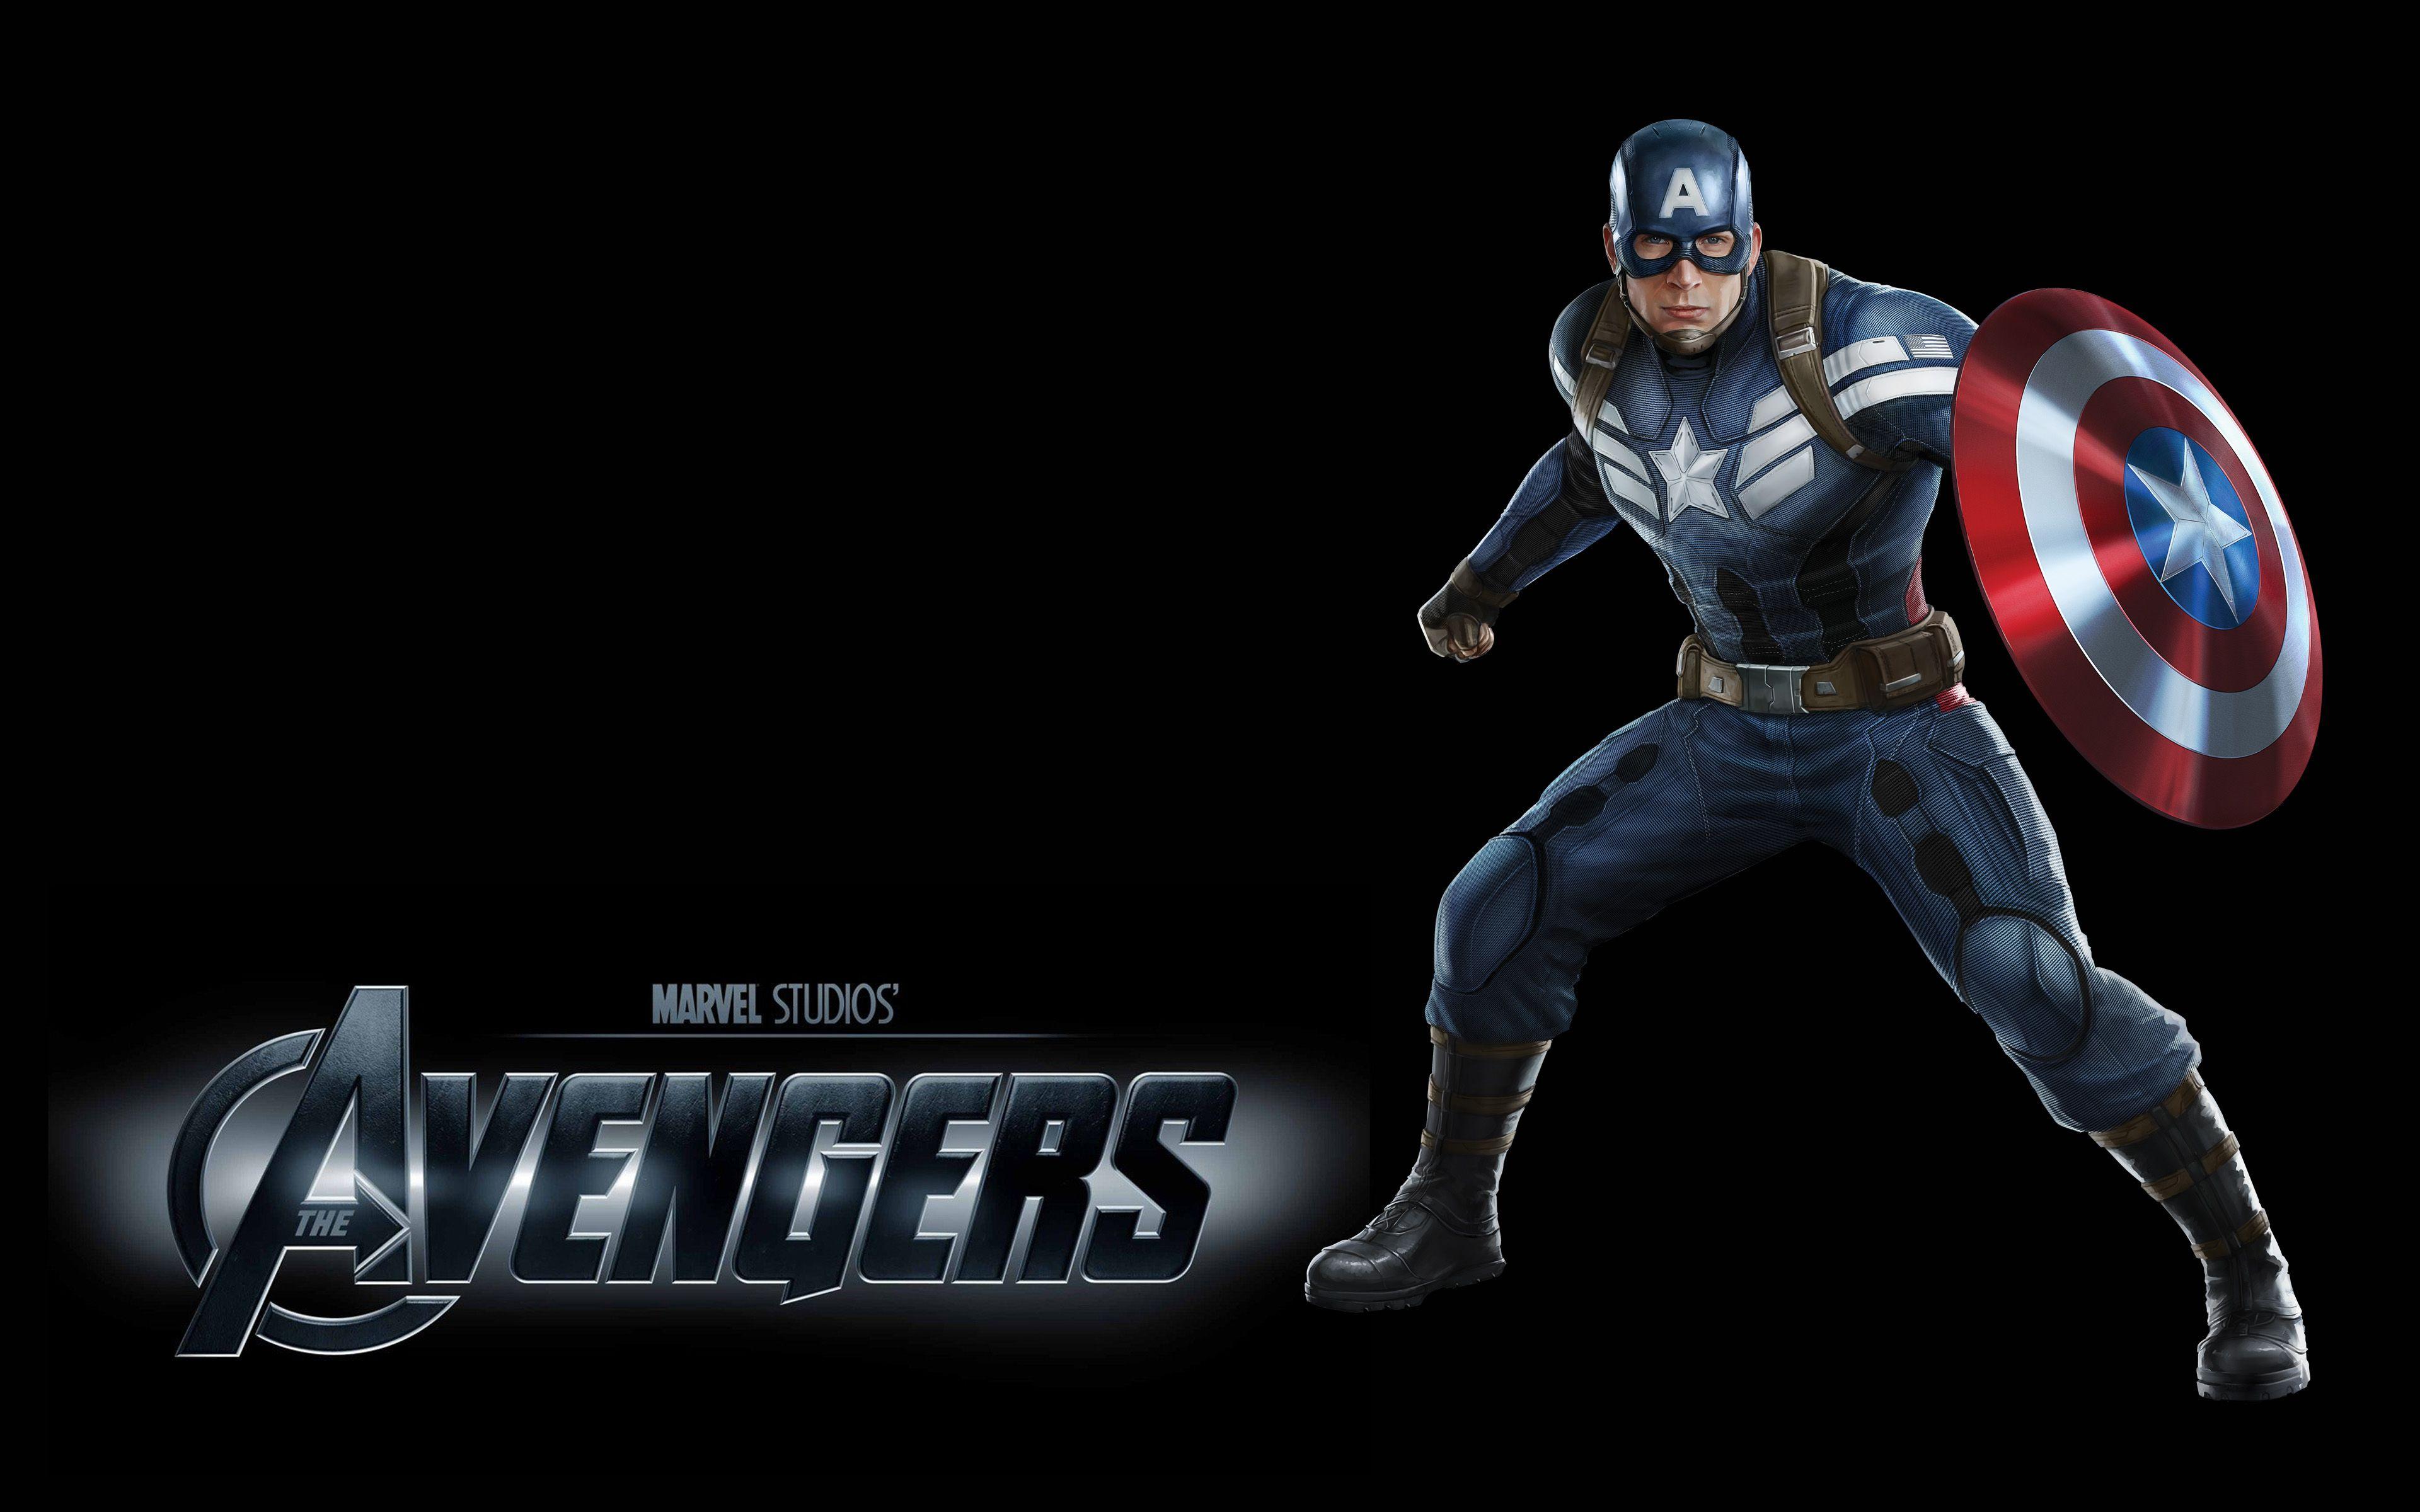 The Avengers Captain America HD Wallpaper For Desktop Mobile Phones